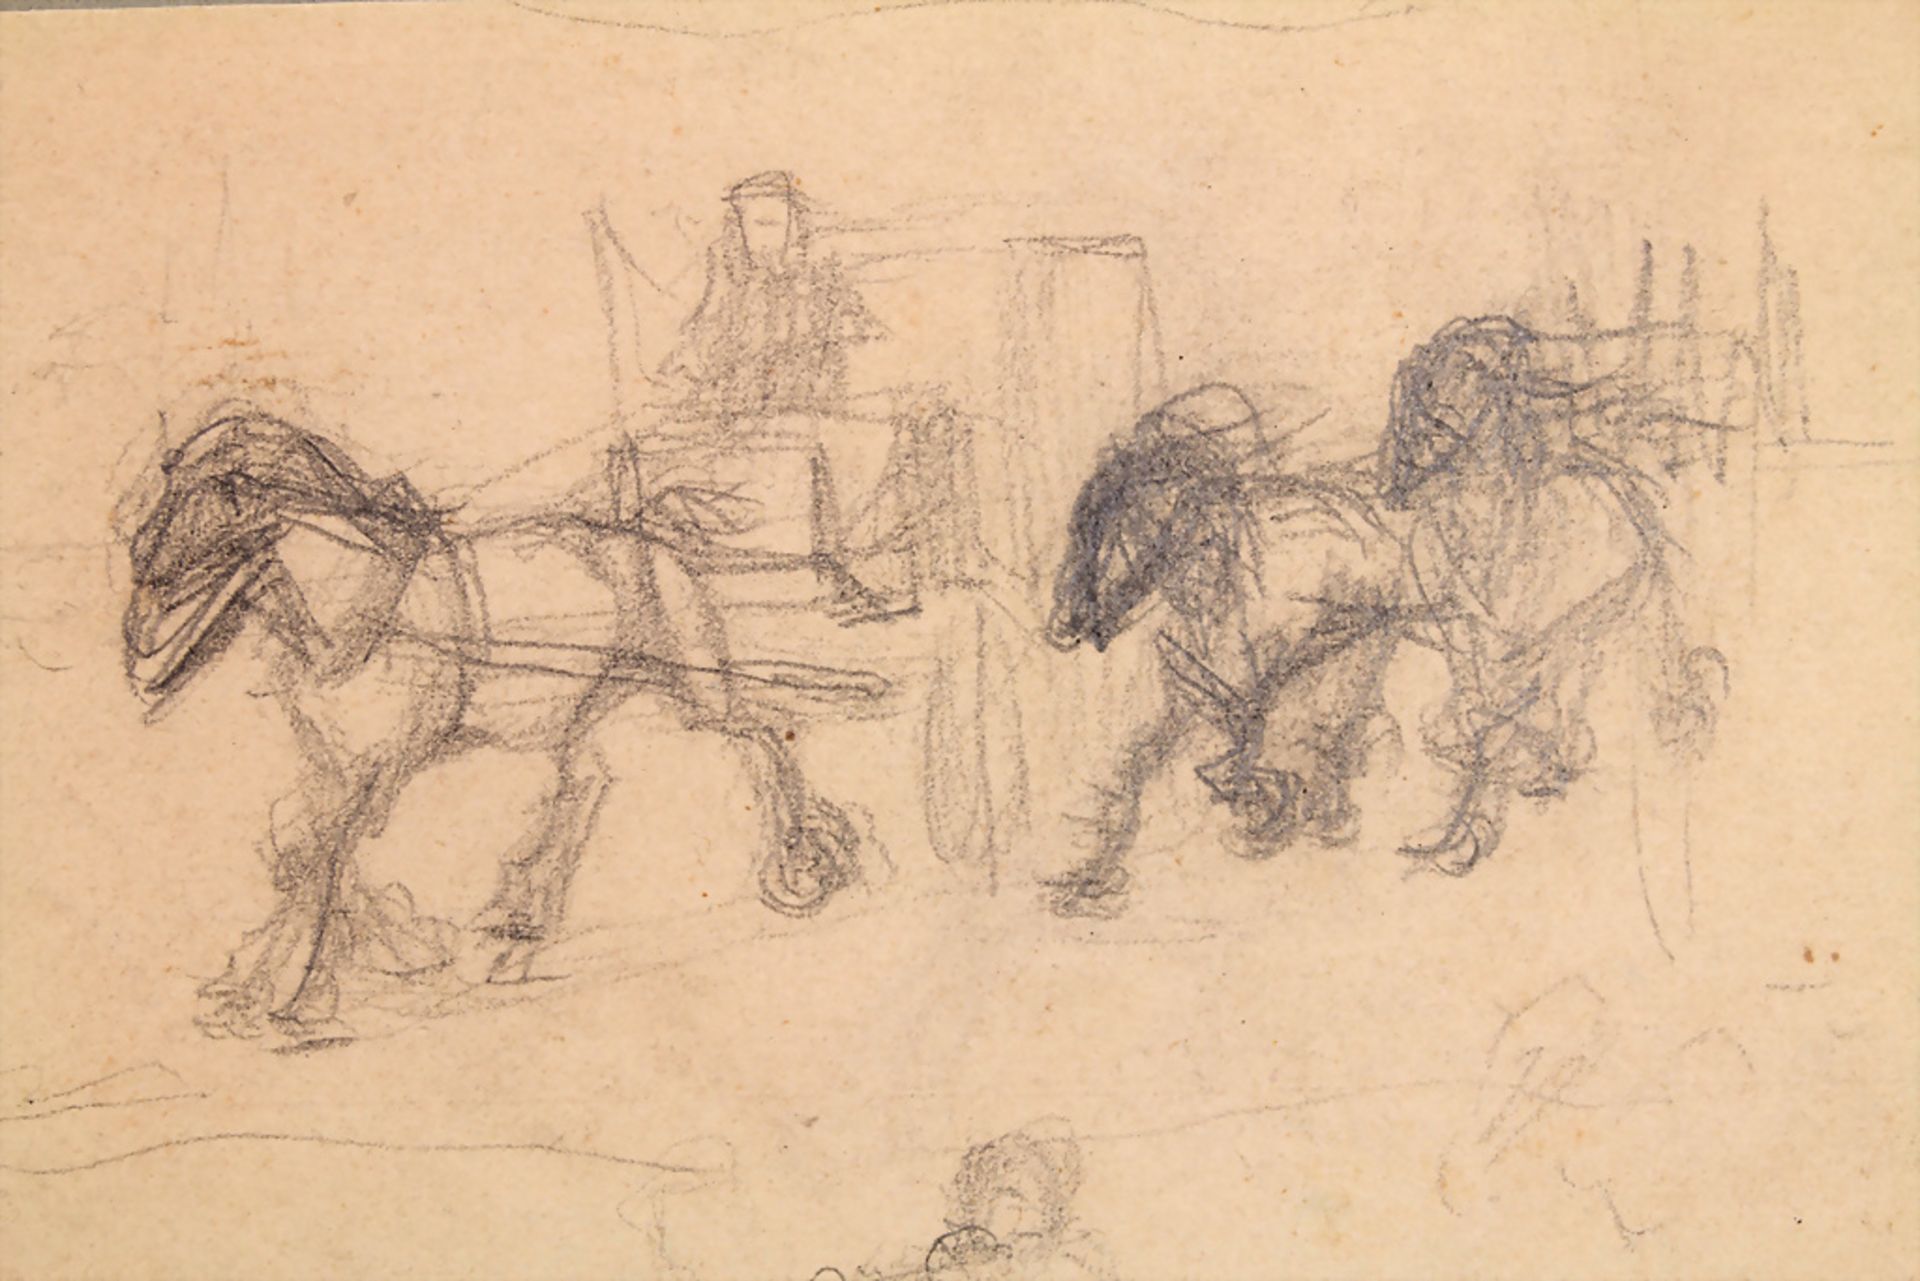 Csóka Mór (1895-?), Skizzenblatt 'Pferde' / A sketch sheet 'Horses' - Image 2 of 3